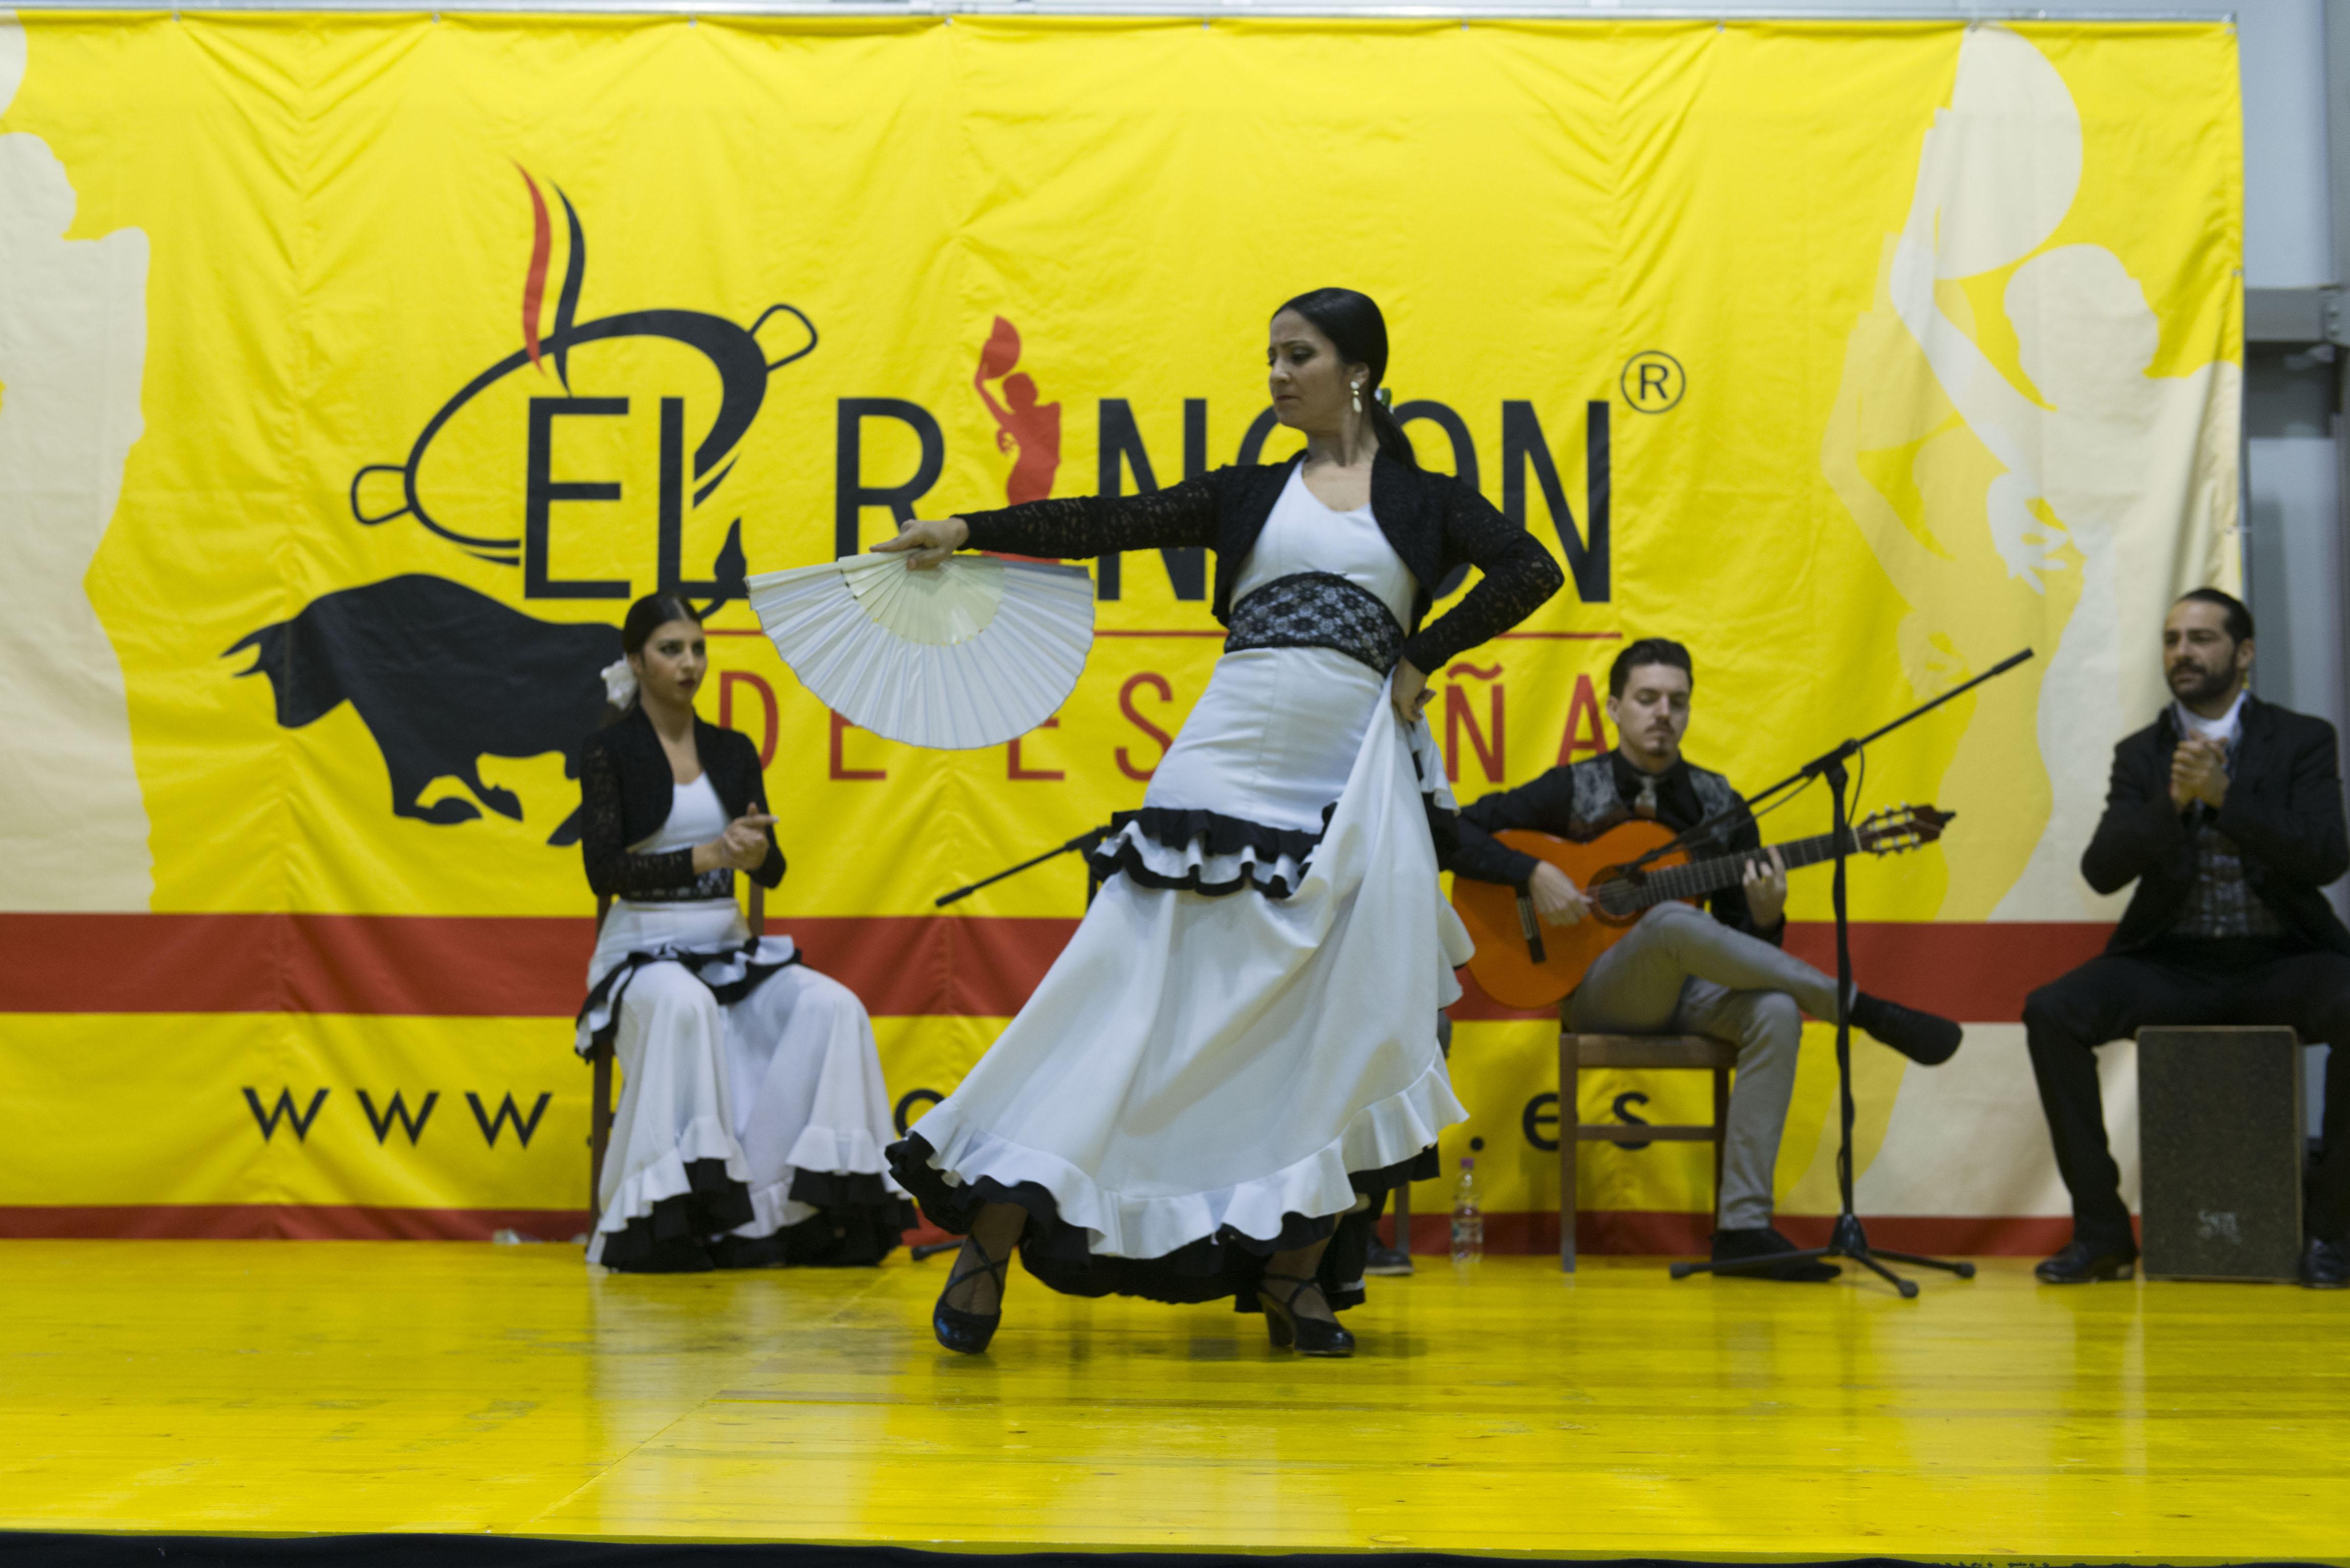 Il Flamenco dell'area Spagna